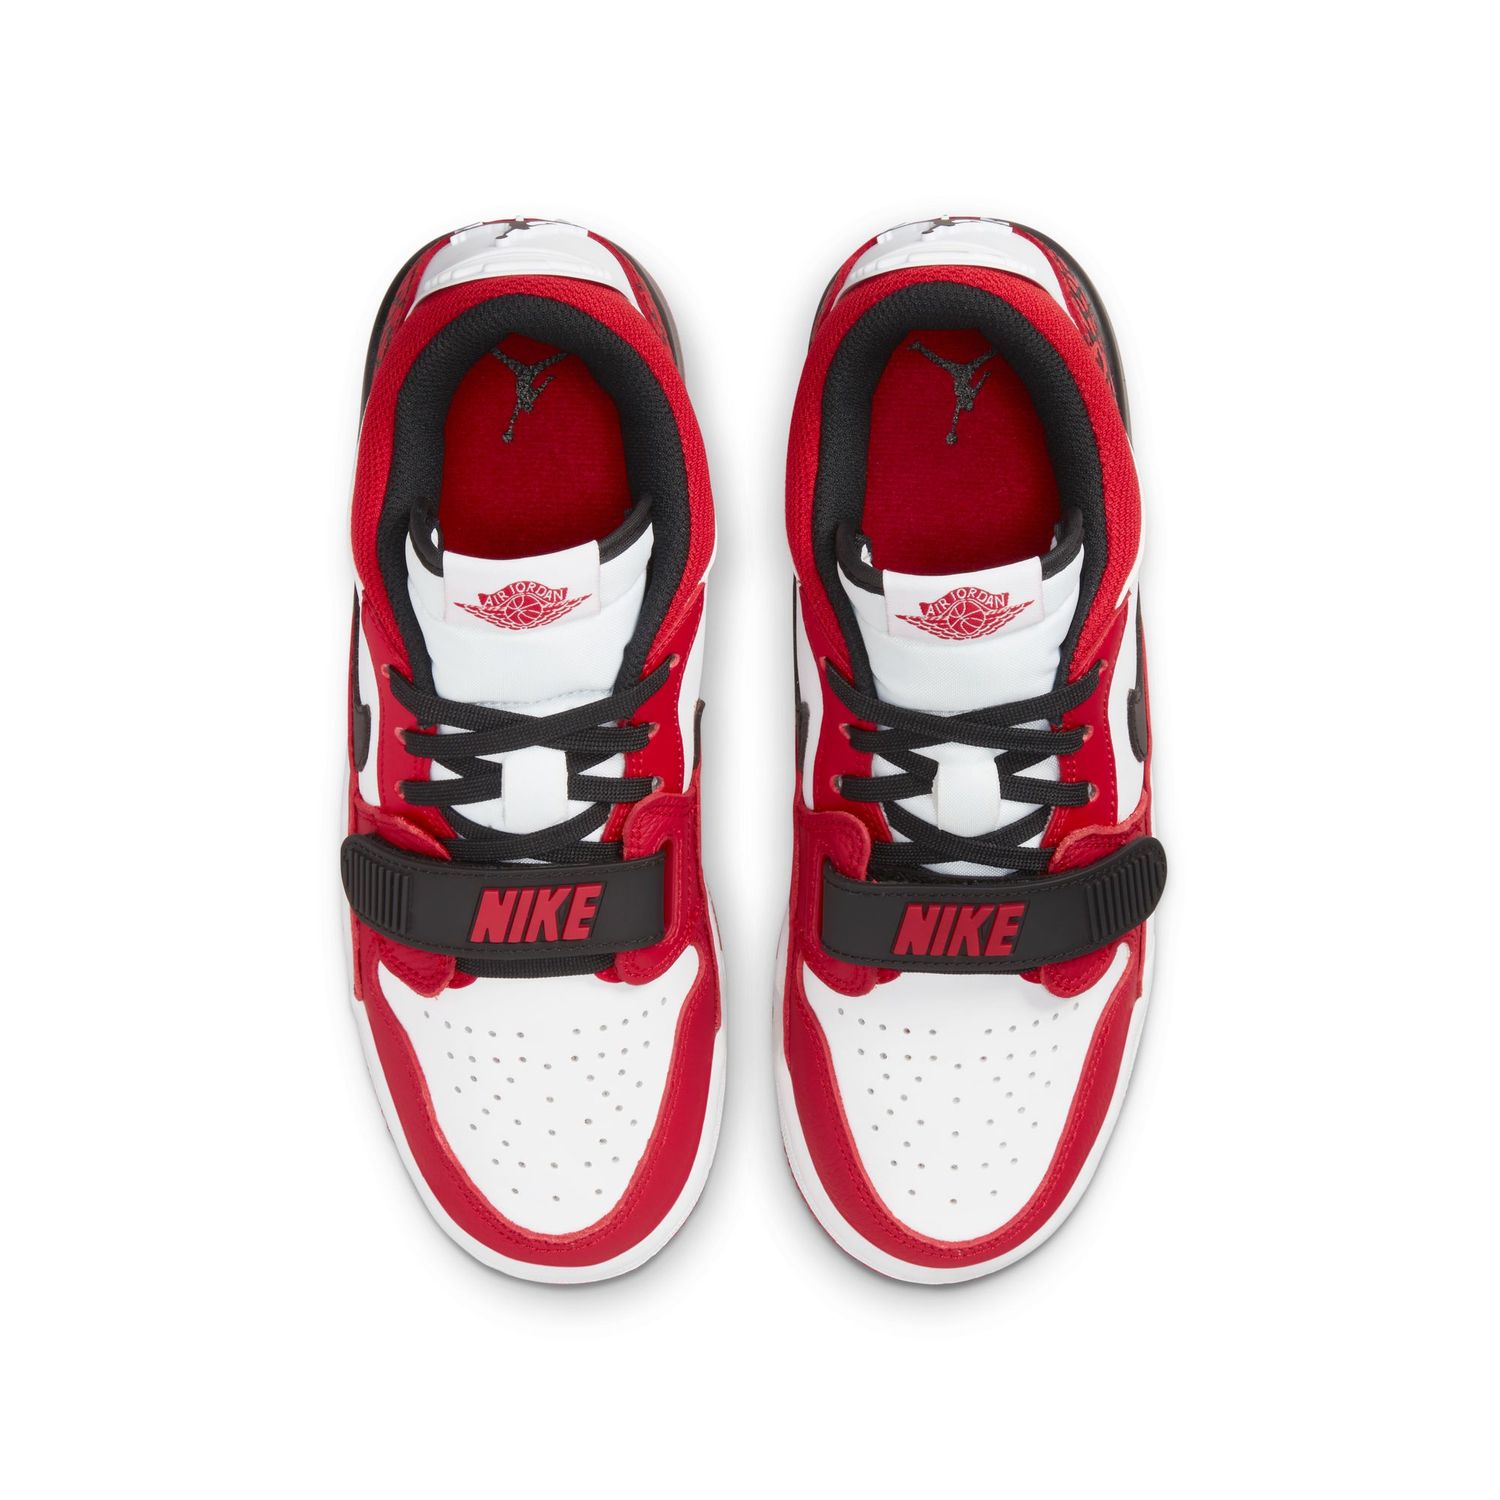 Air Jordan Legacy 312 Low Kinder Sneaker